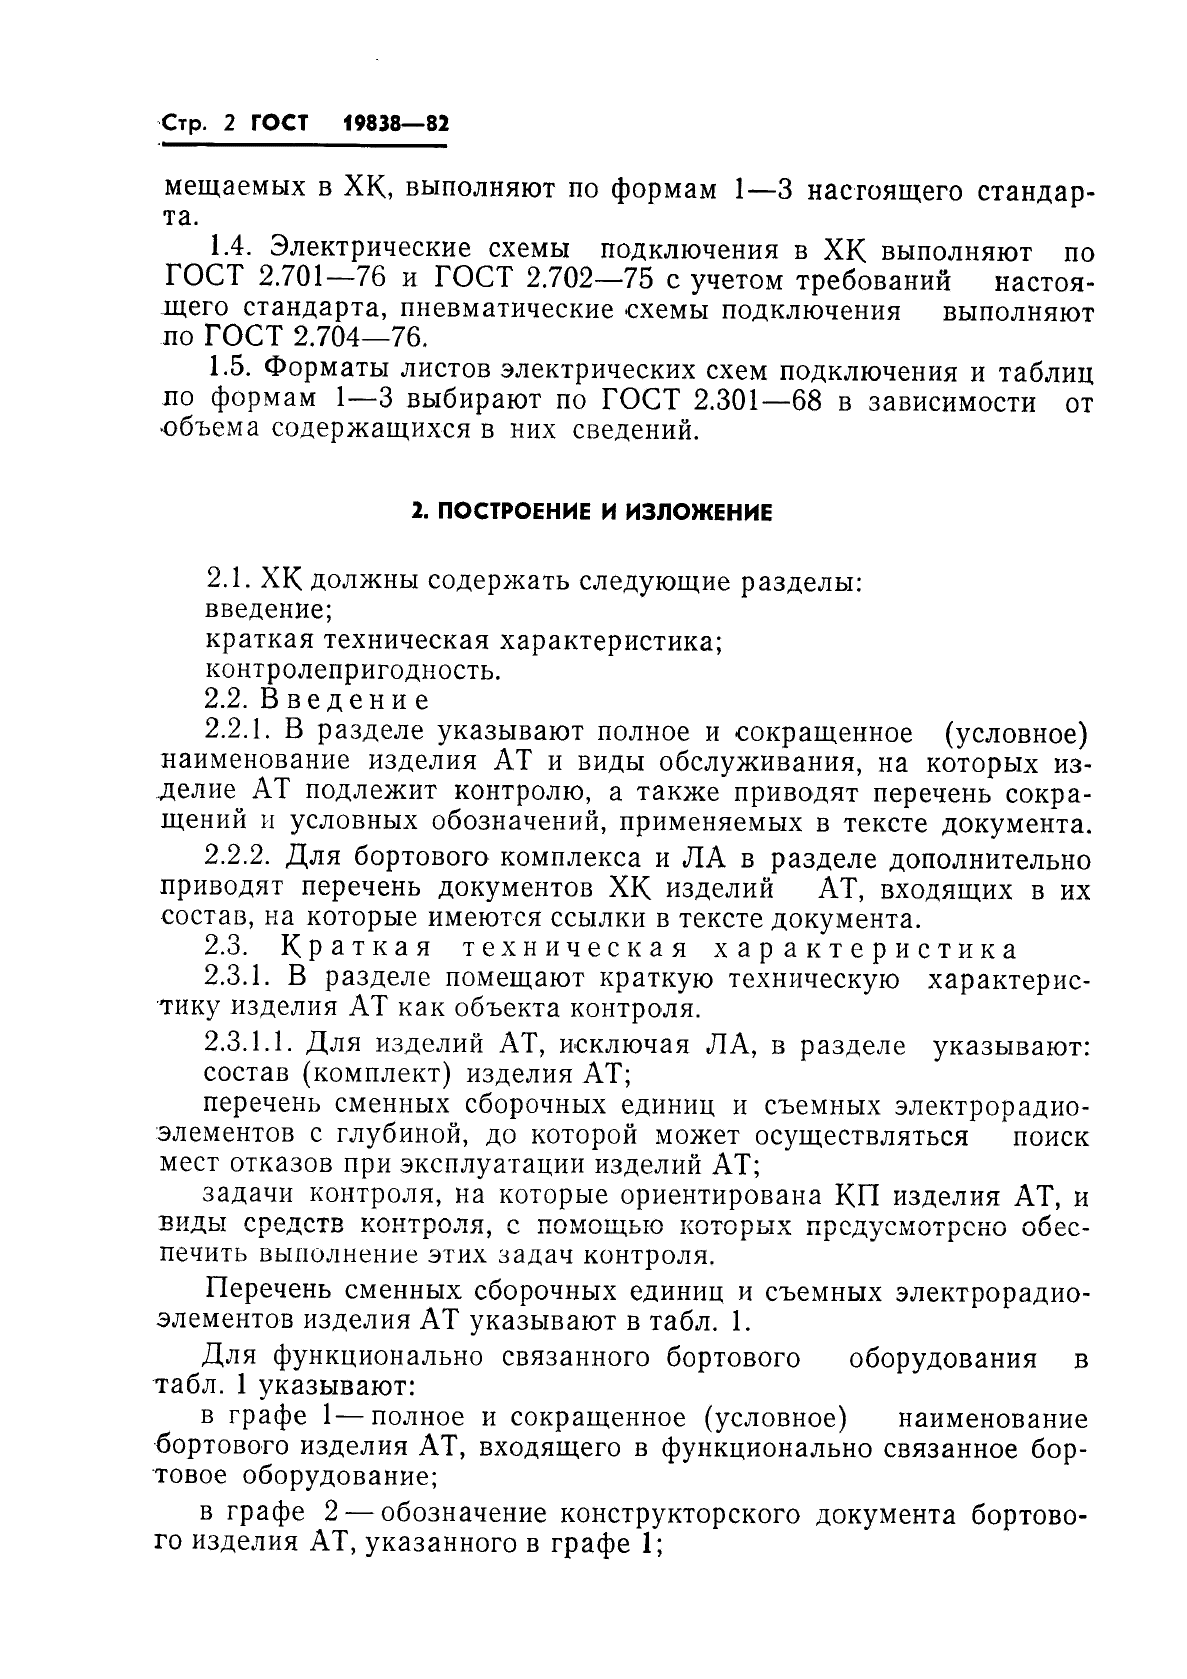 ГОСТ 19838-82 Характеристика контролепригодности изделий авиационной техники. Правила изложения и оформления (фото 3 из 21)